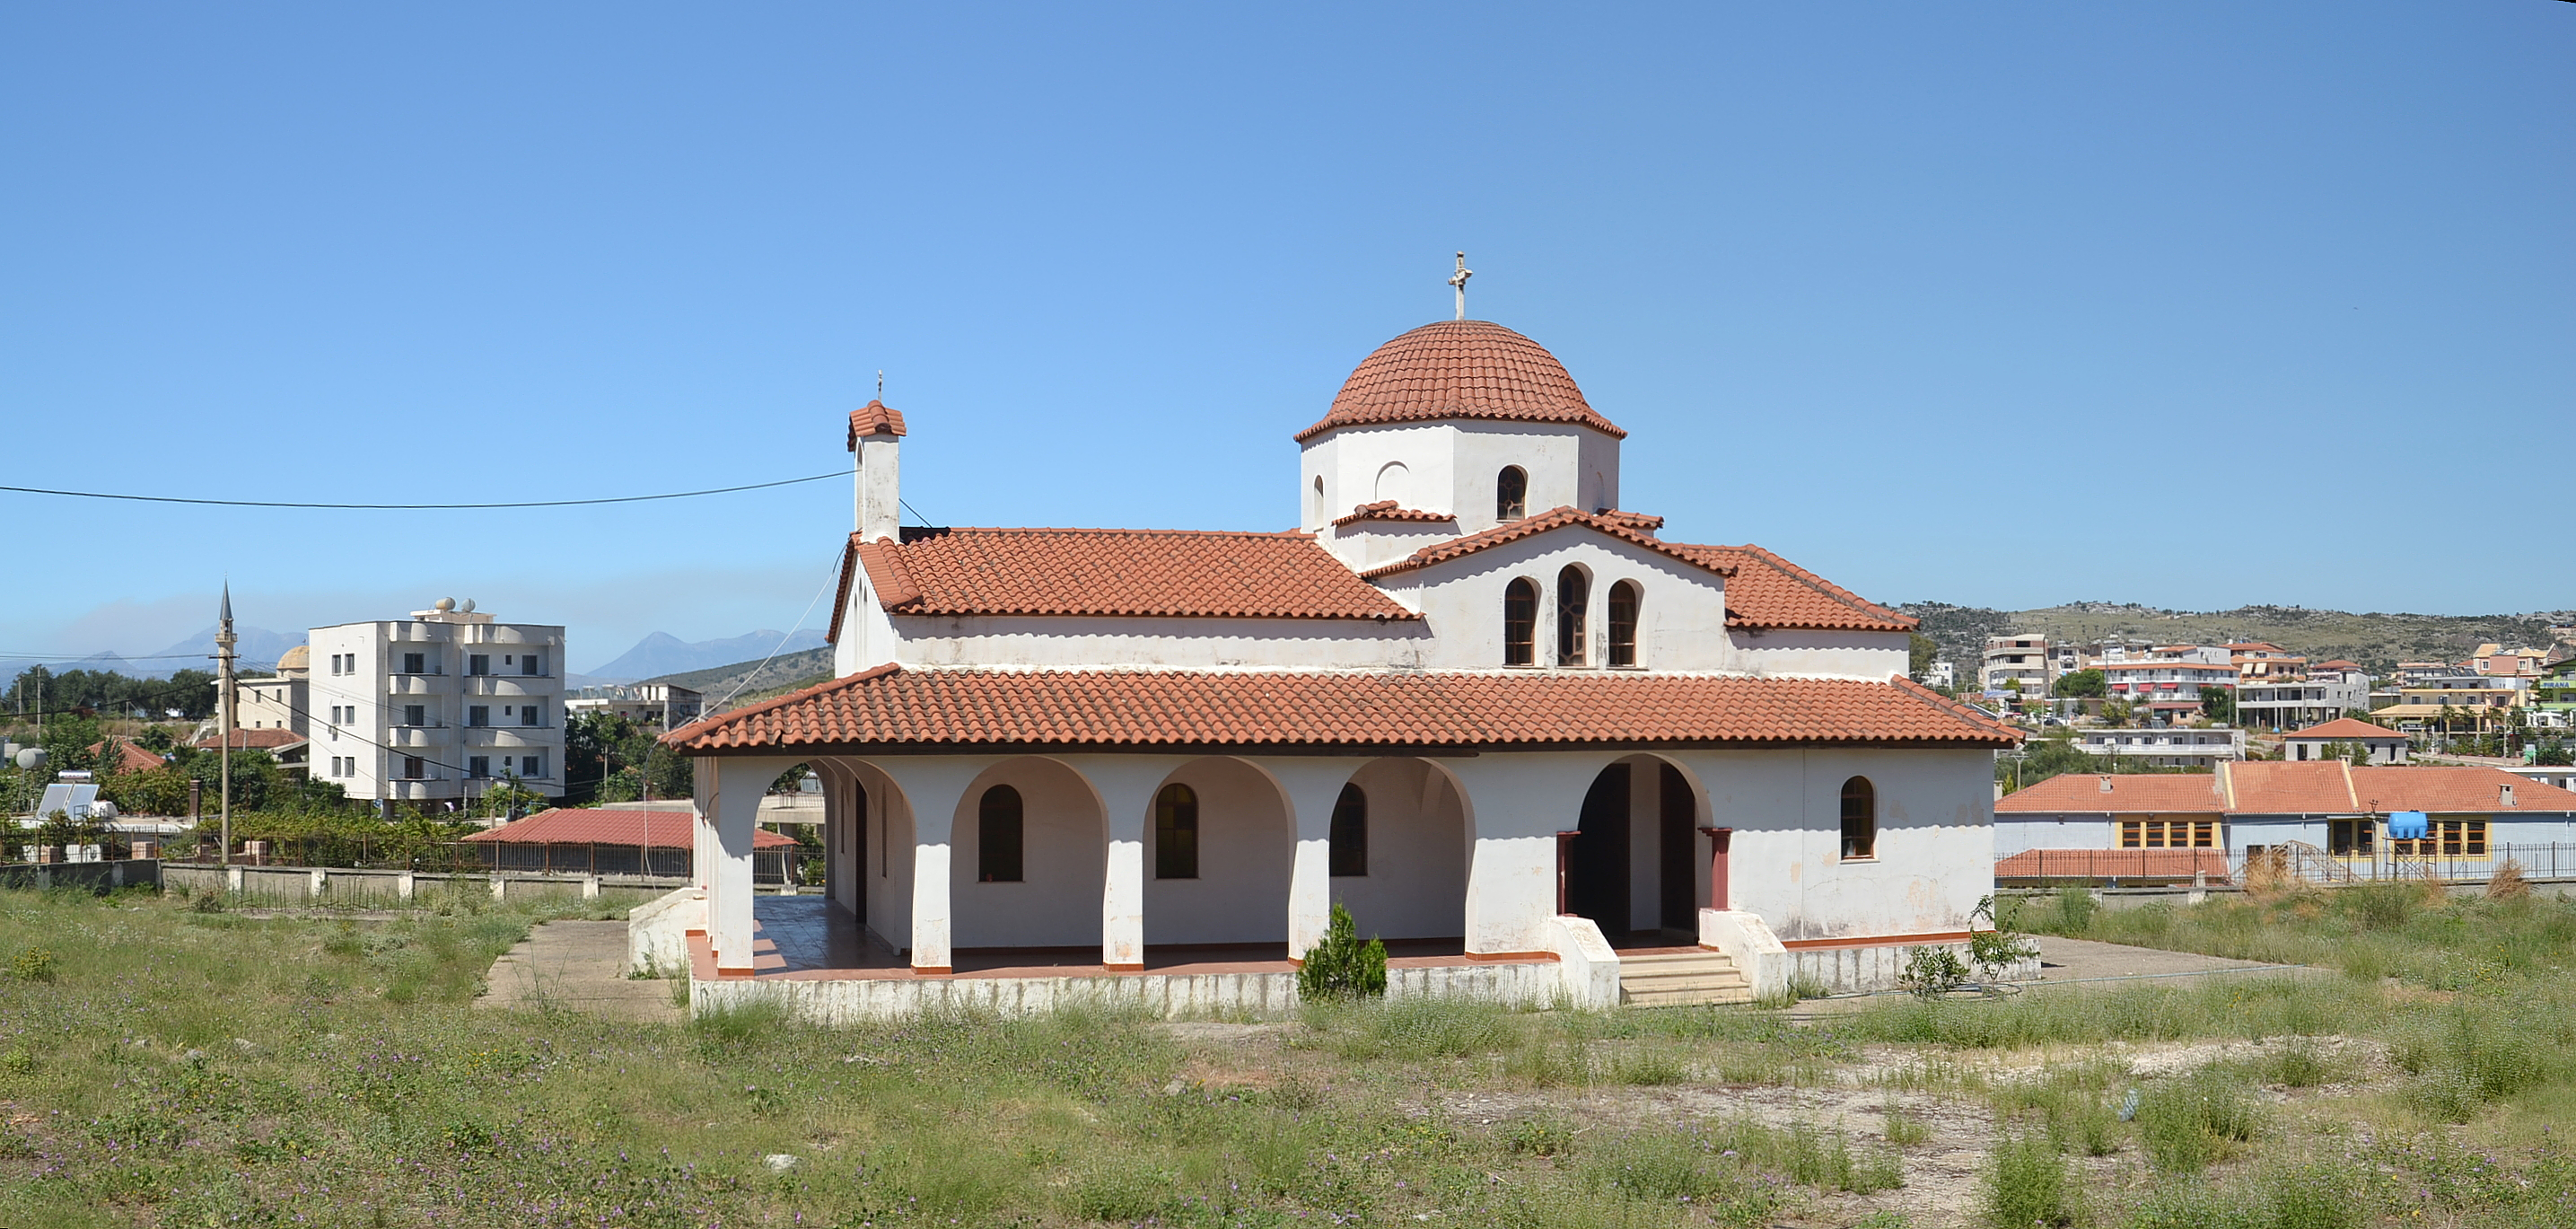 Ksamil - church